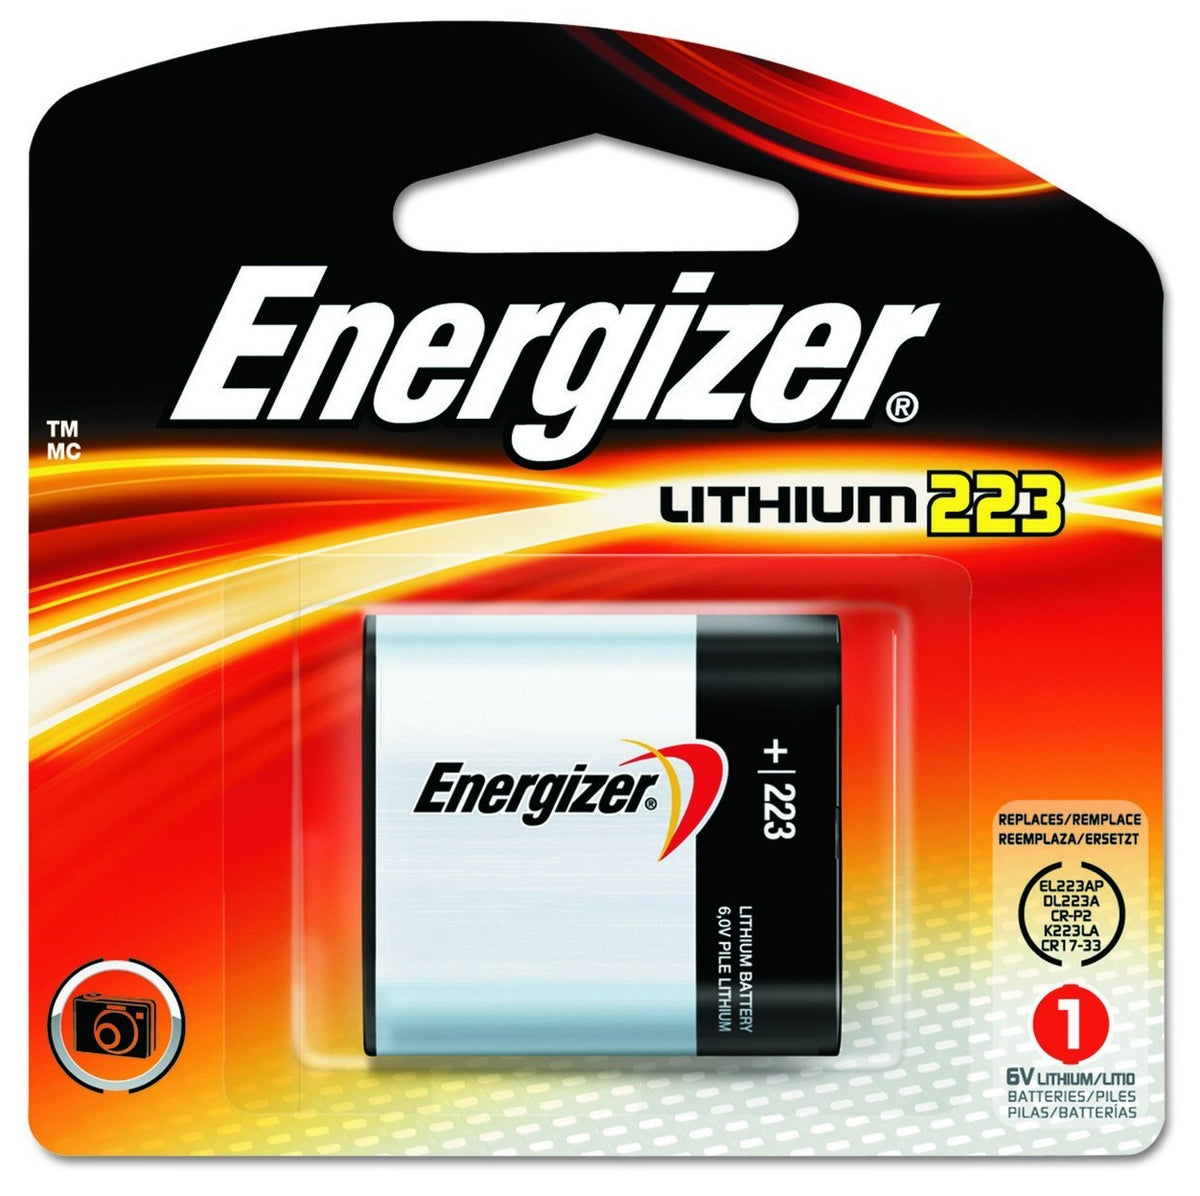 Energizer EL223APBP Lithium Camera Battery, 6 Volt, 1500 mAh